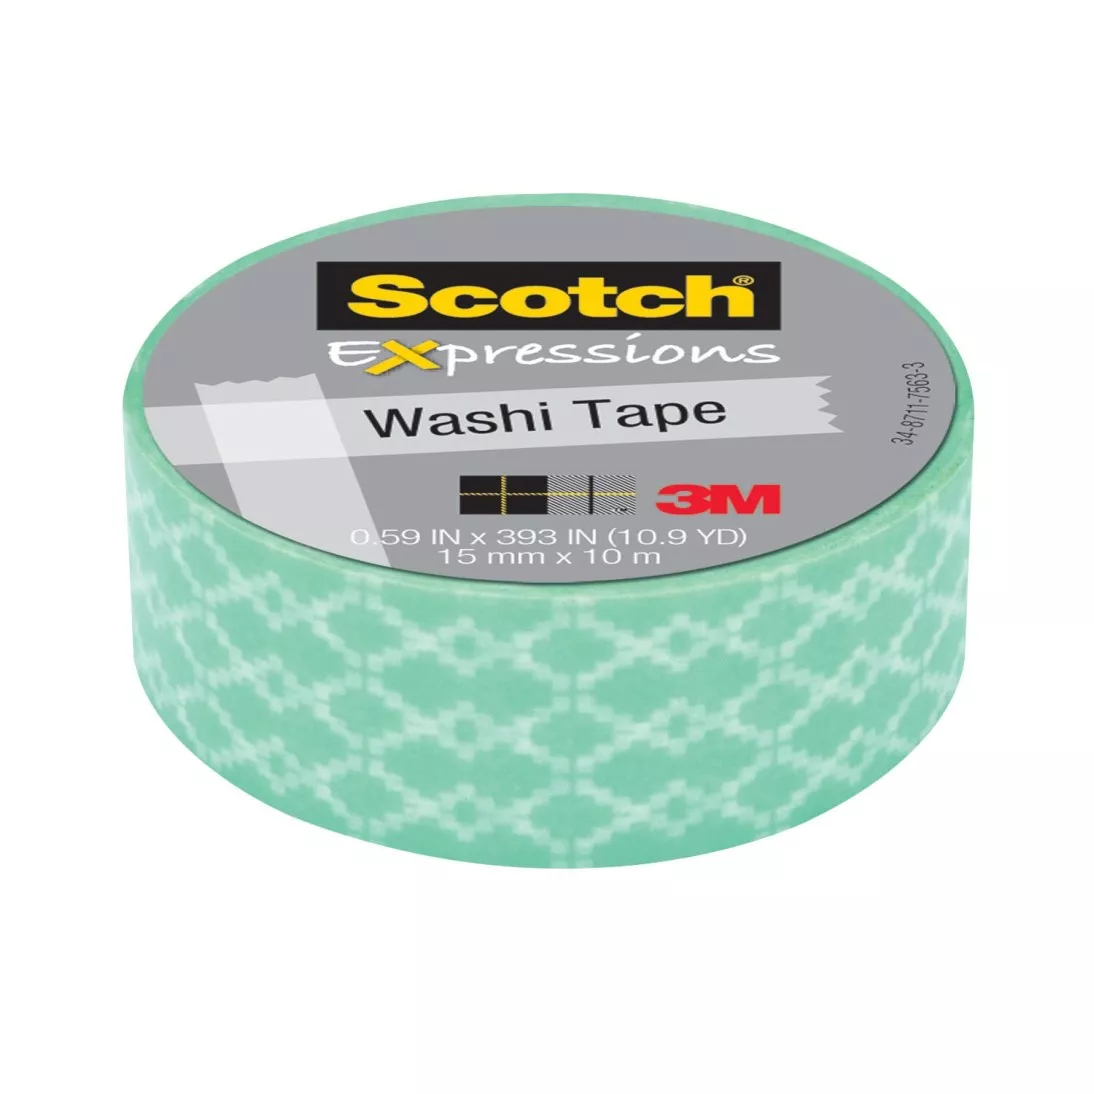 Scotch® Expressions Washi Tape C314-P38, .59 in x 393 in (15 mm x 10 m)
Blue Weave